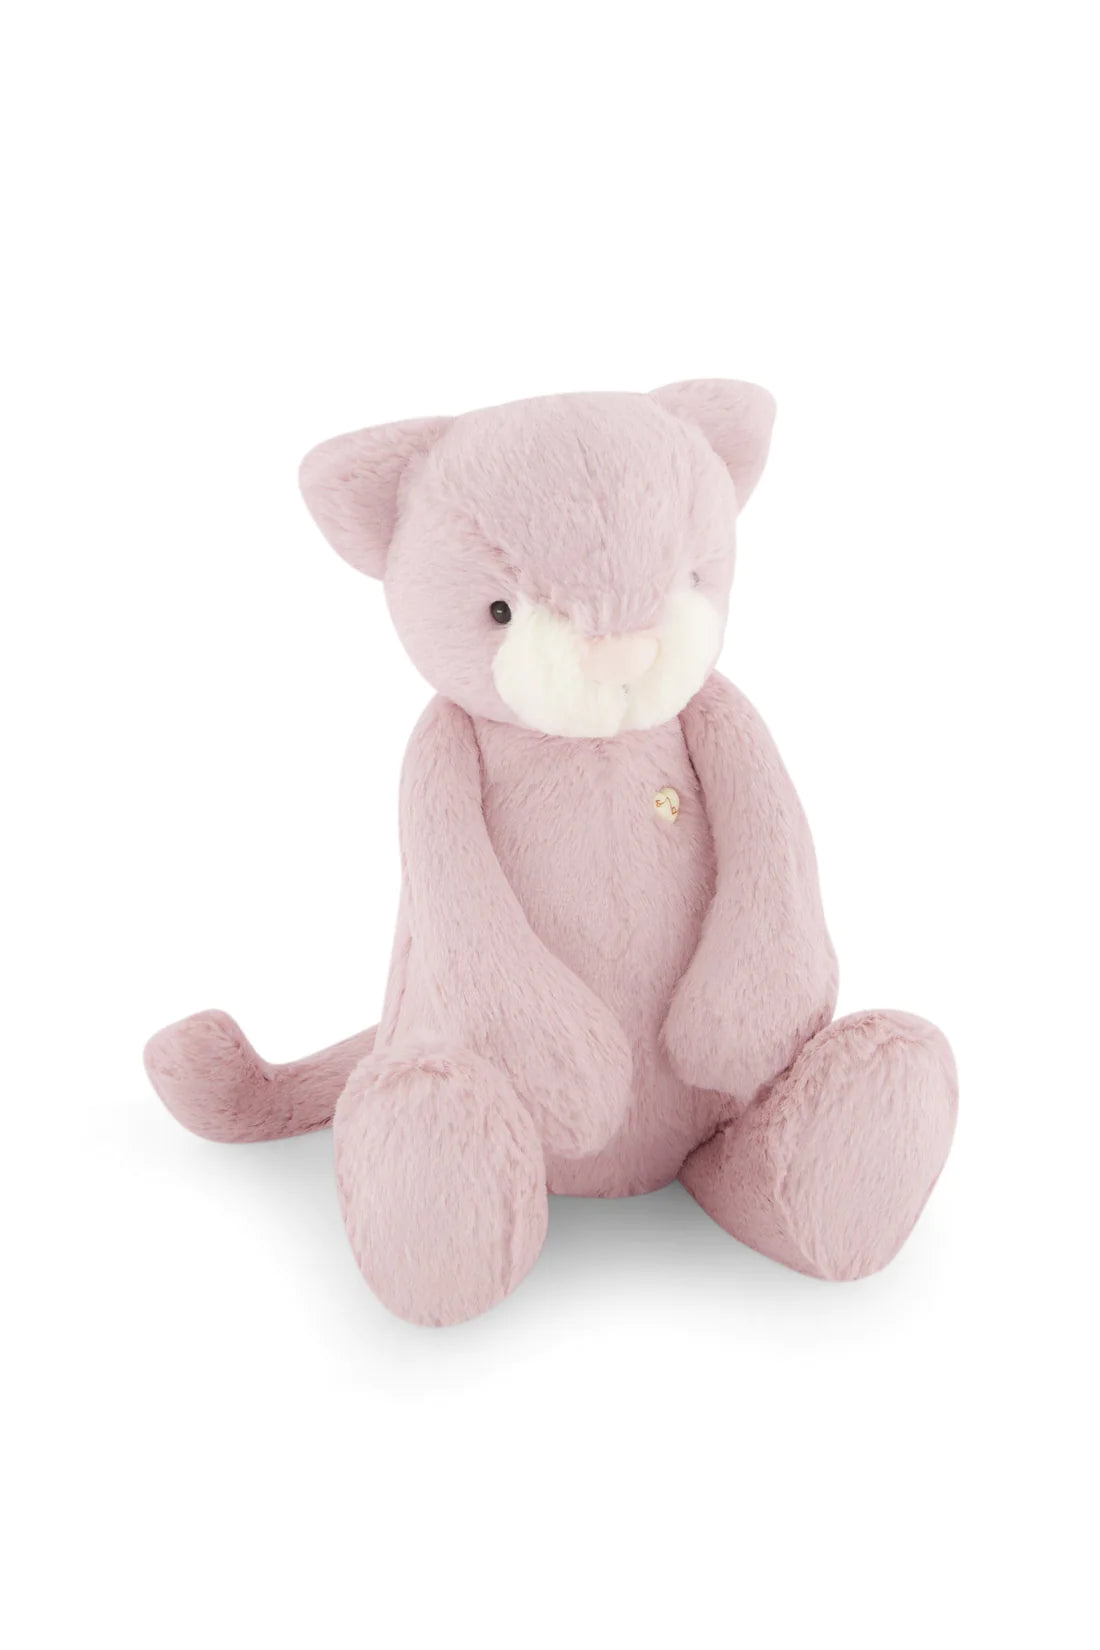 Snuggle Bunnies - Elsie the Kitty - Powder Pink | Jamie Kay